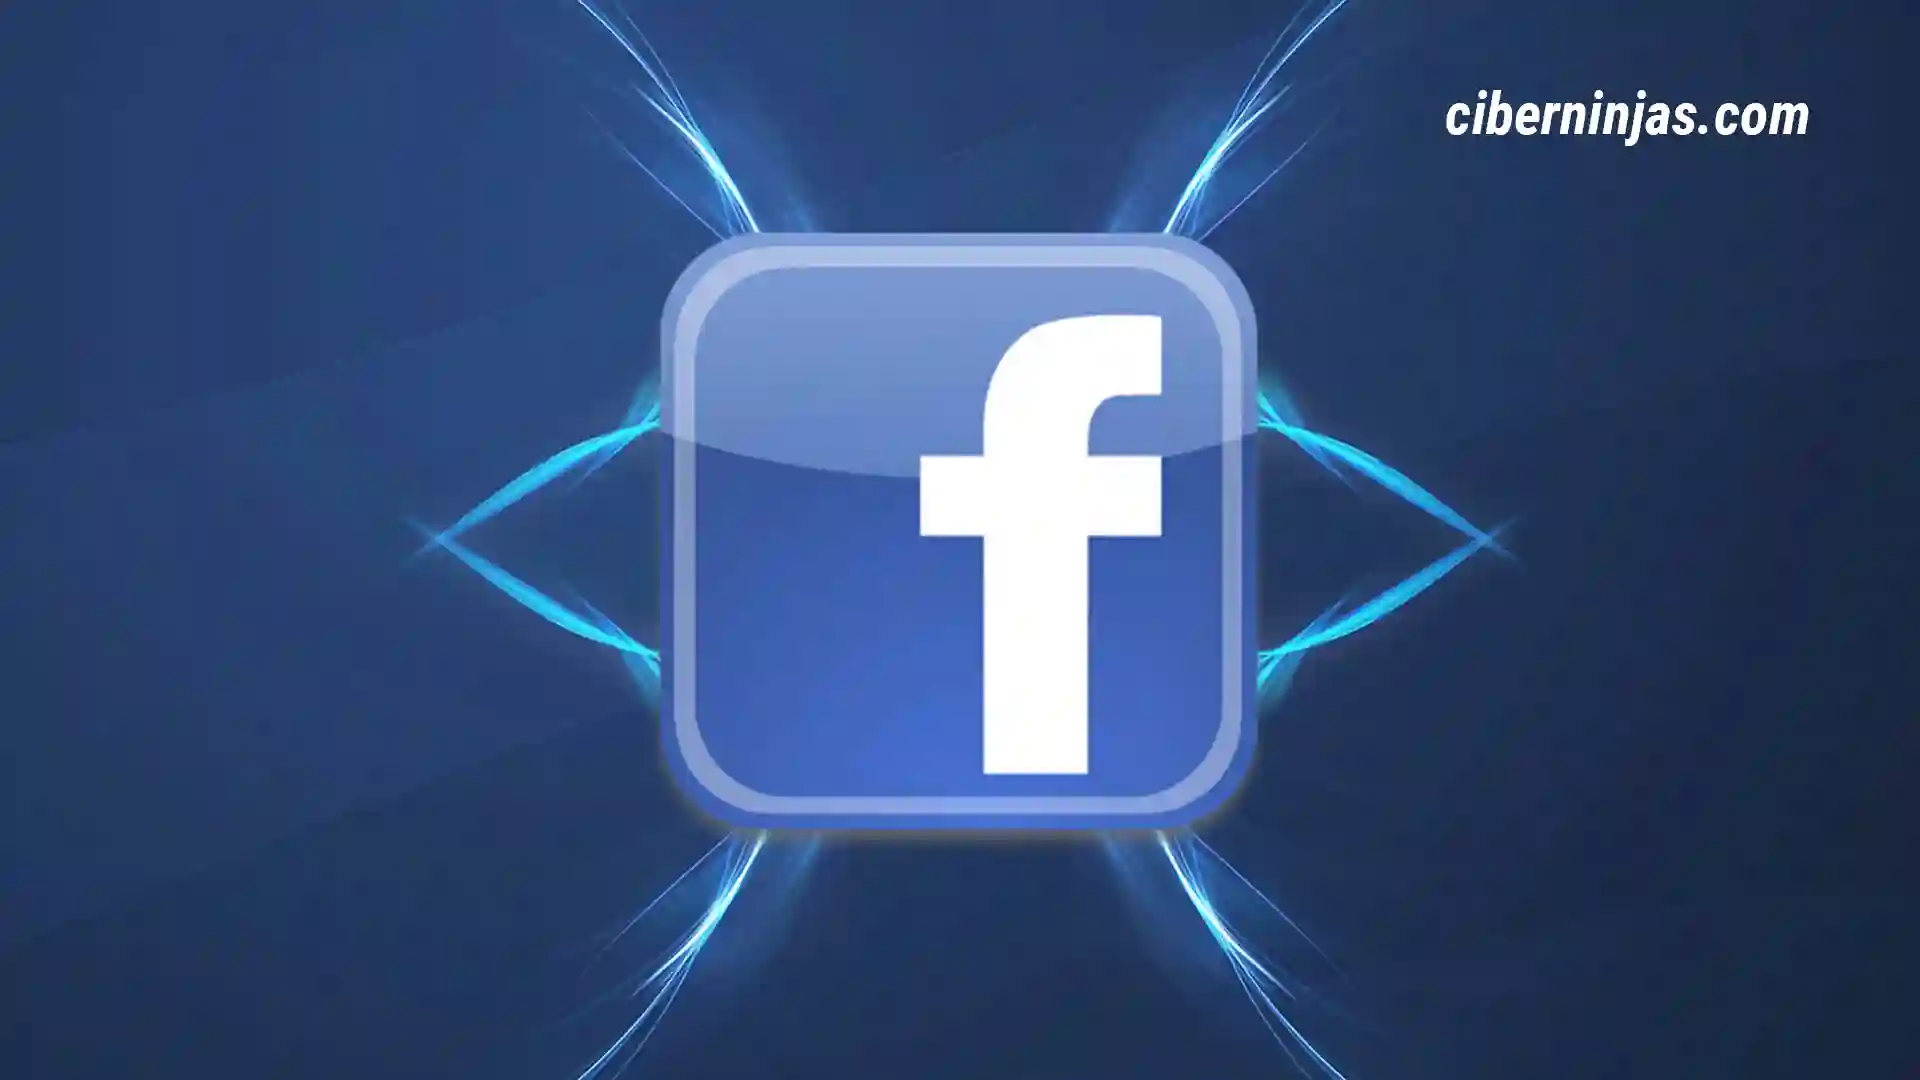 Facebook: Hacks, Trucos yt Consejos, más noticias de Última hora